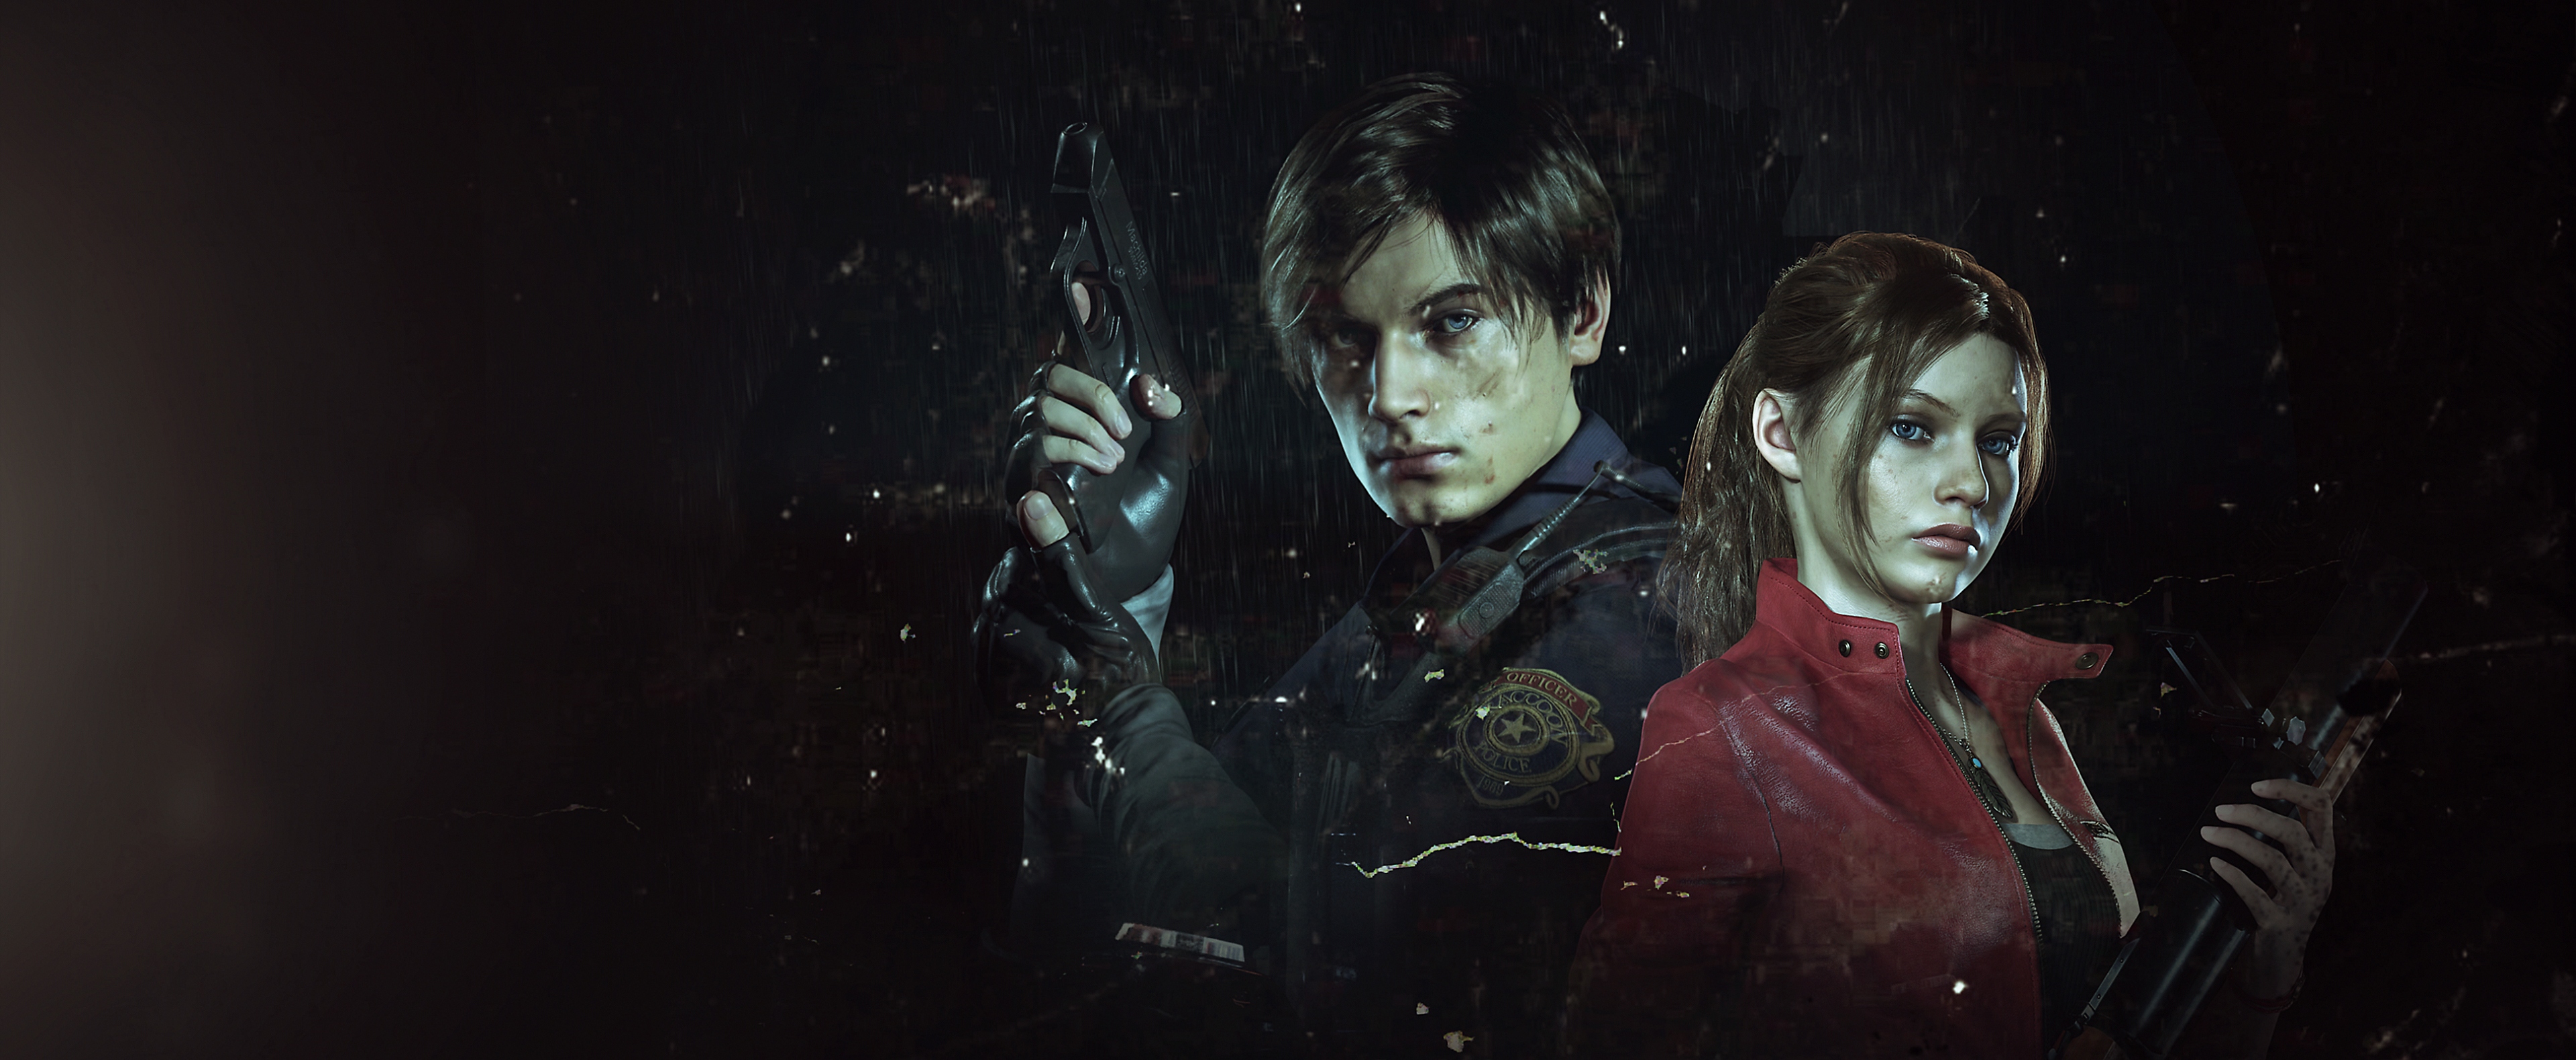 العمل الفني للعبة Resident Evil